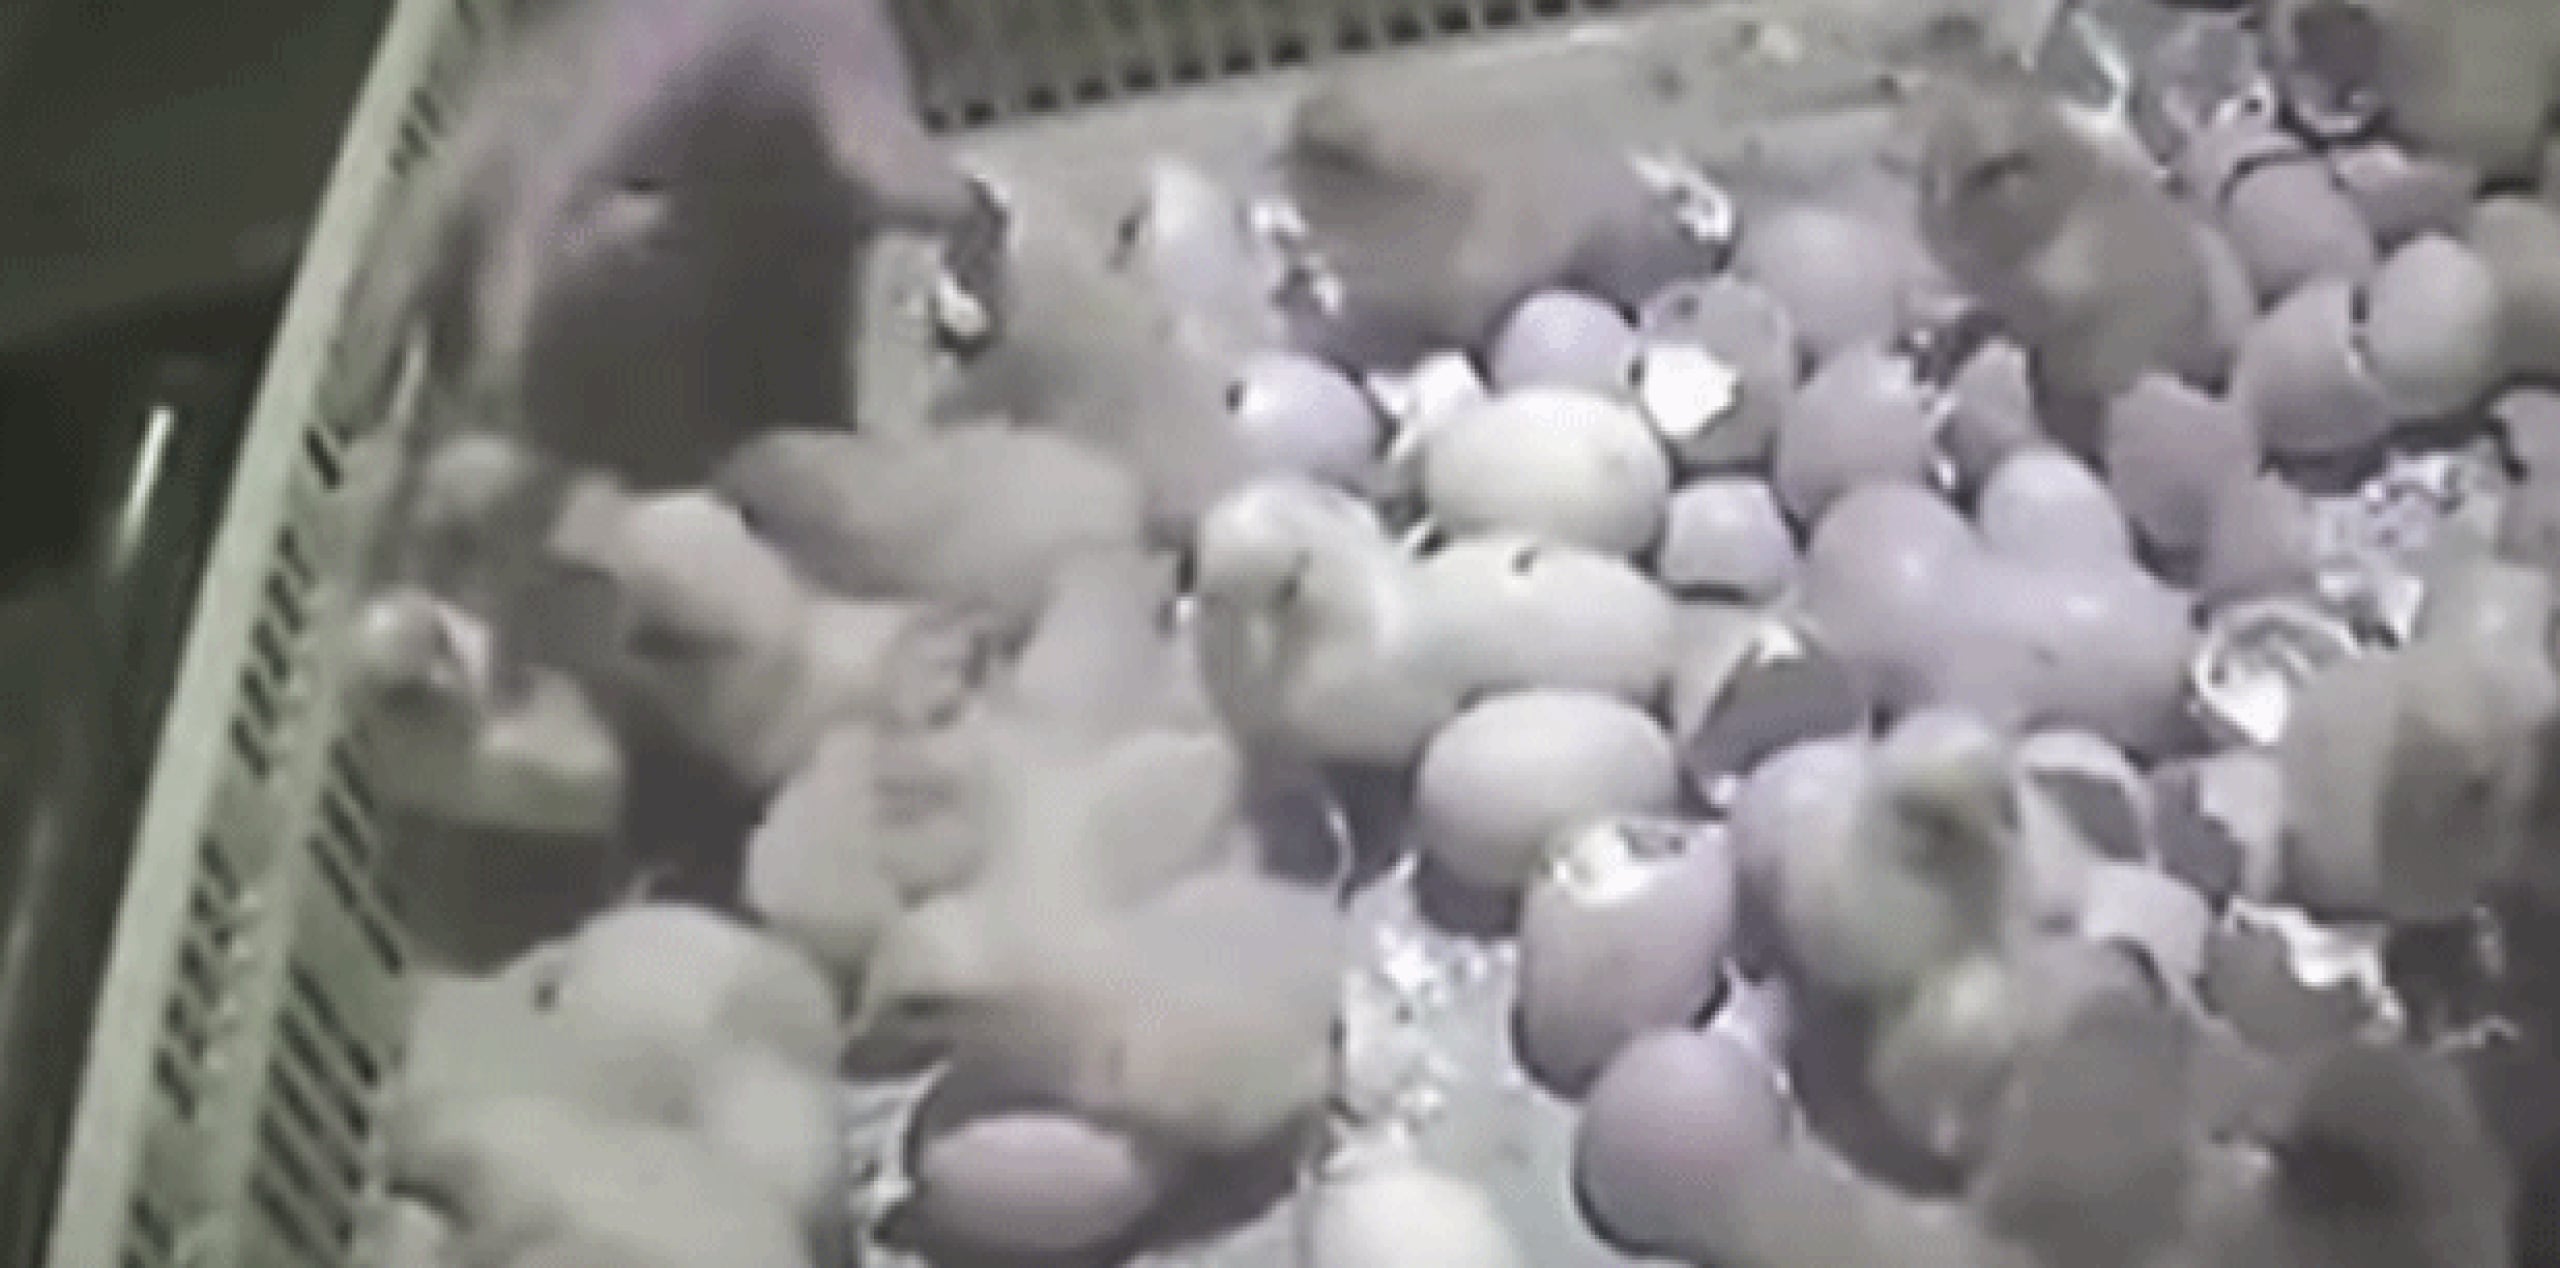 En la grabación, se ve al personal lanzando con fuerza cajas llenas de pollos vivos sobre los cadáveres de otras aves que están cubiertas de moscas.  (YouTube)